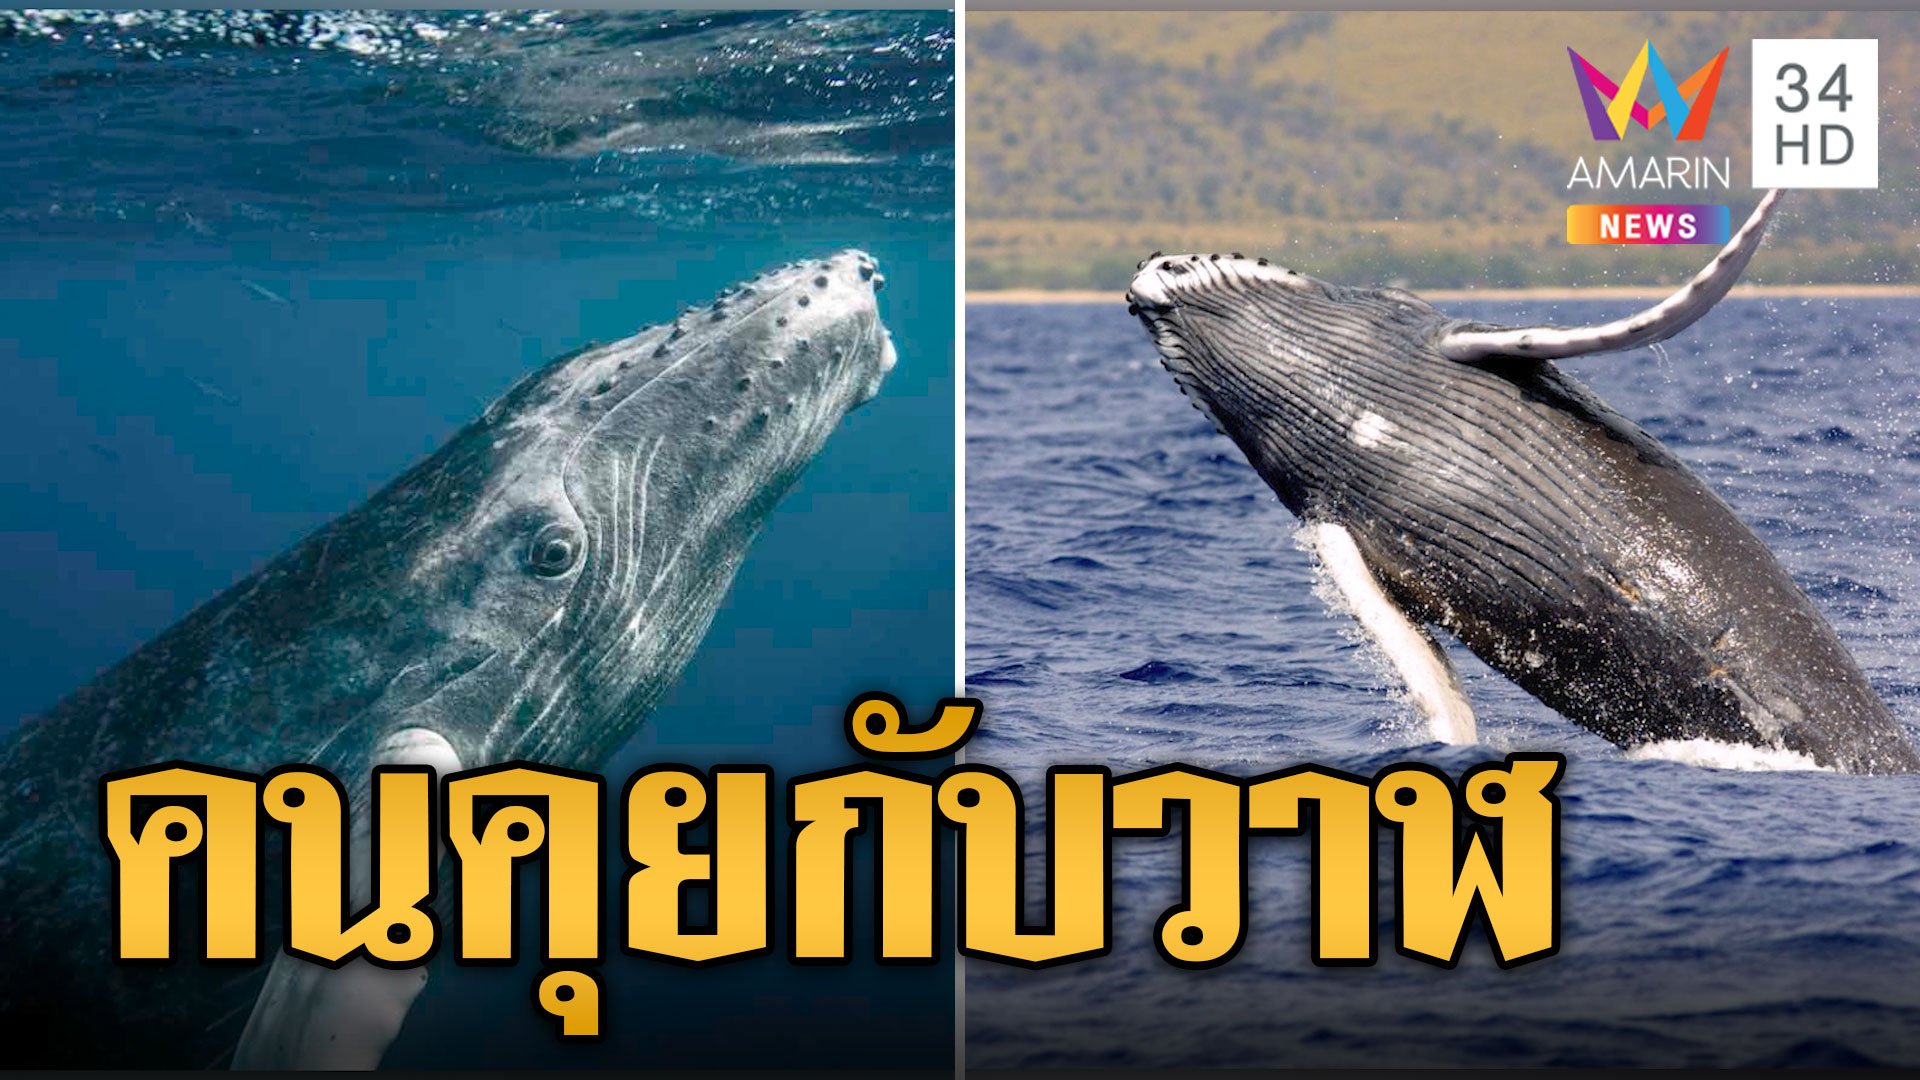 นักวิทยาศาสตร์สุดเจ๋ง คุยกับวาฬกรุยทางติดต่อ 'เอเลี่ยน' | ข่าวอรุณอมรินทร์ | 19 ธ.ค. 66 | AMARIN TVHD34